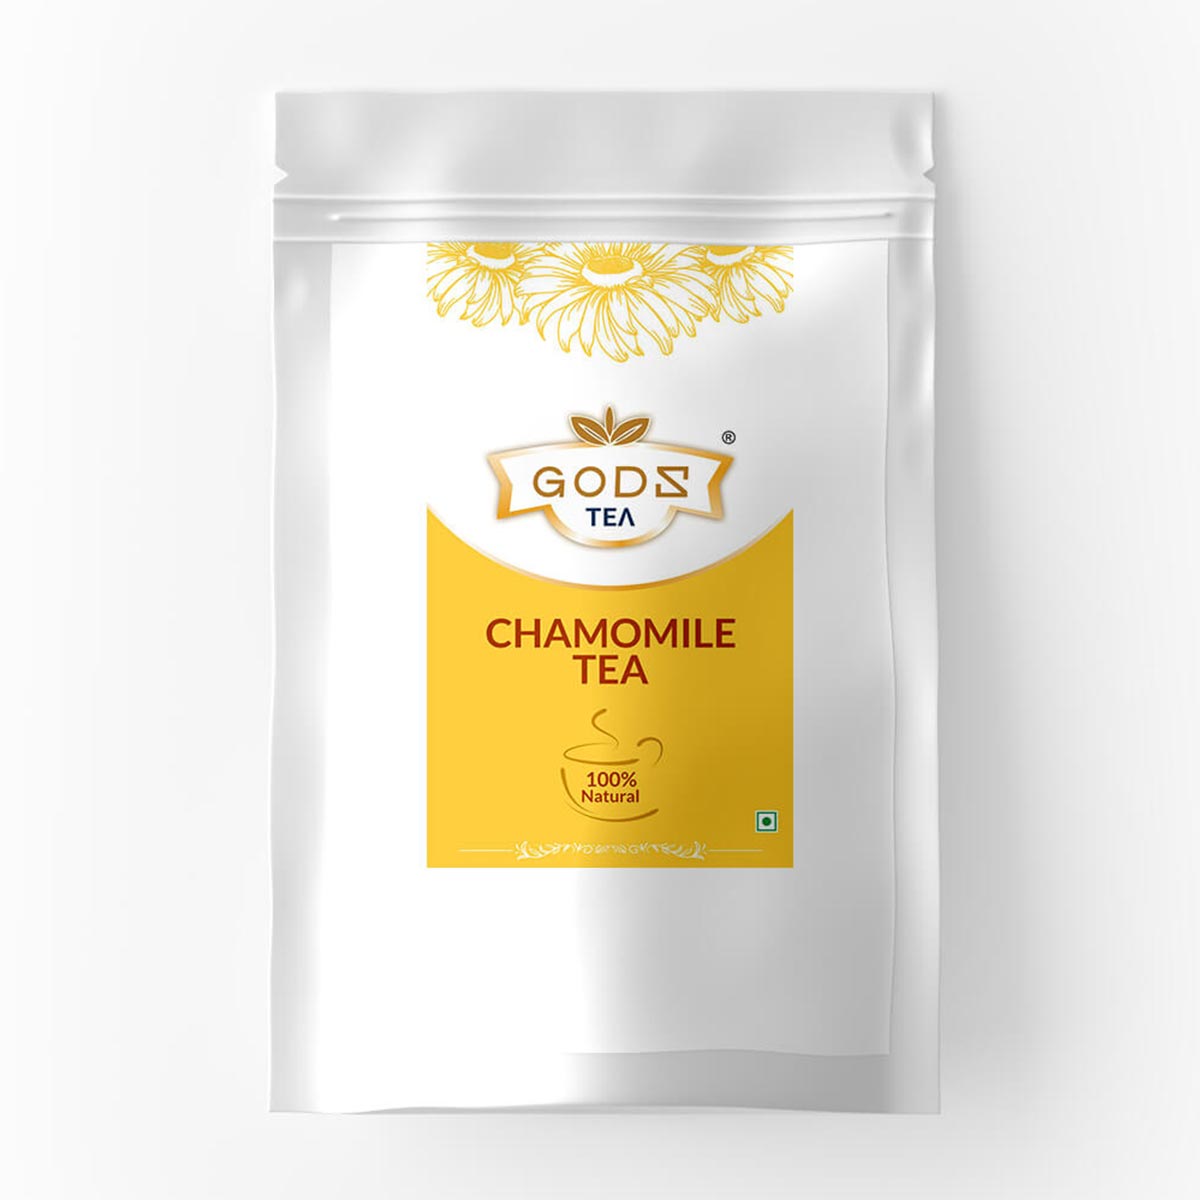 Chamomile Tea buy chai online